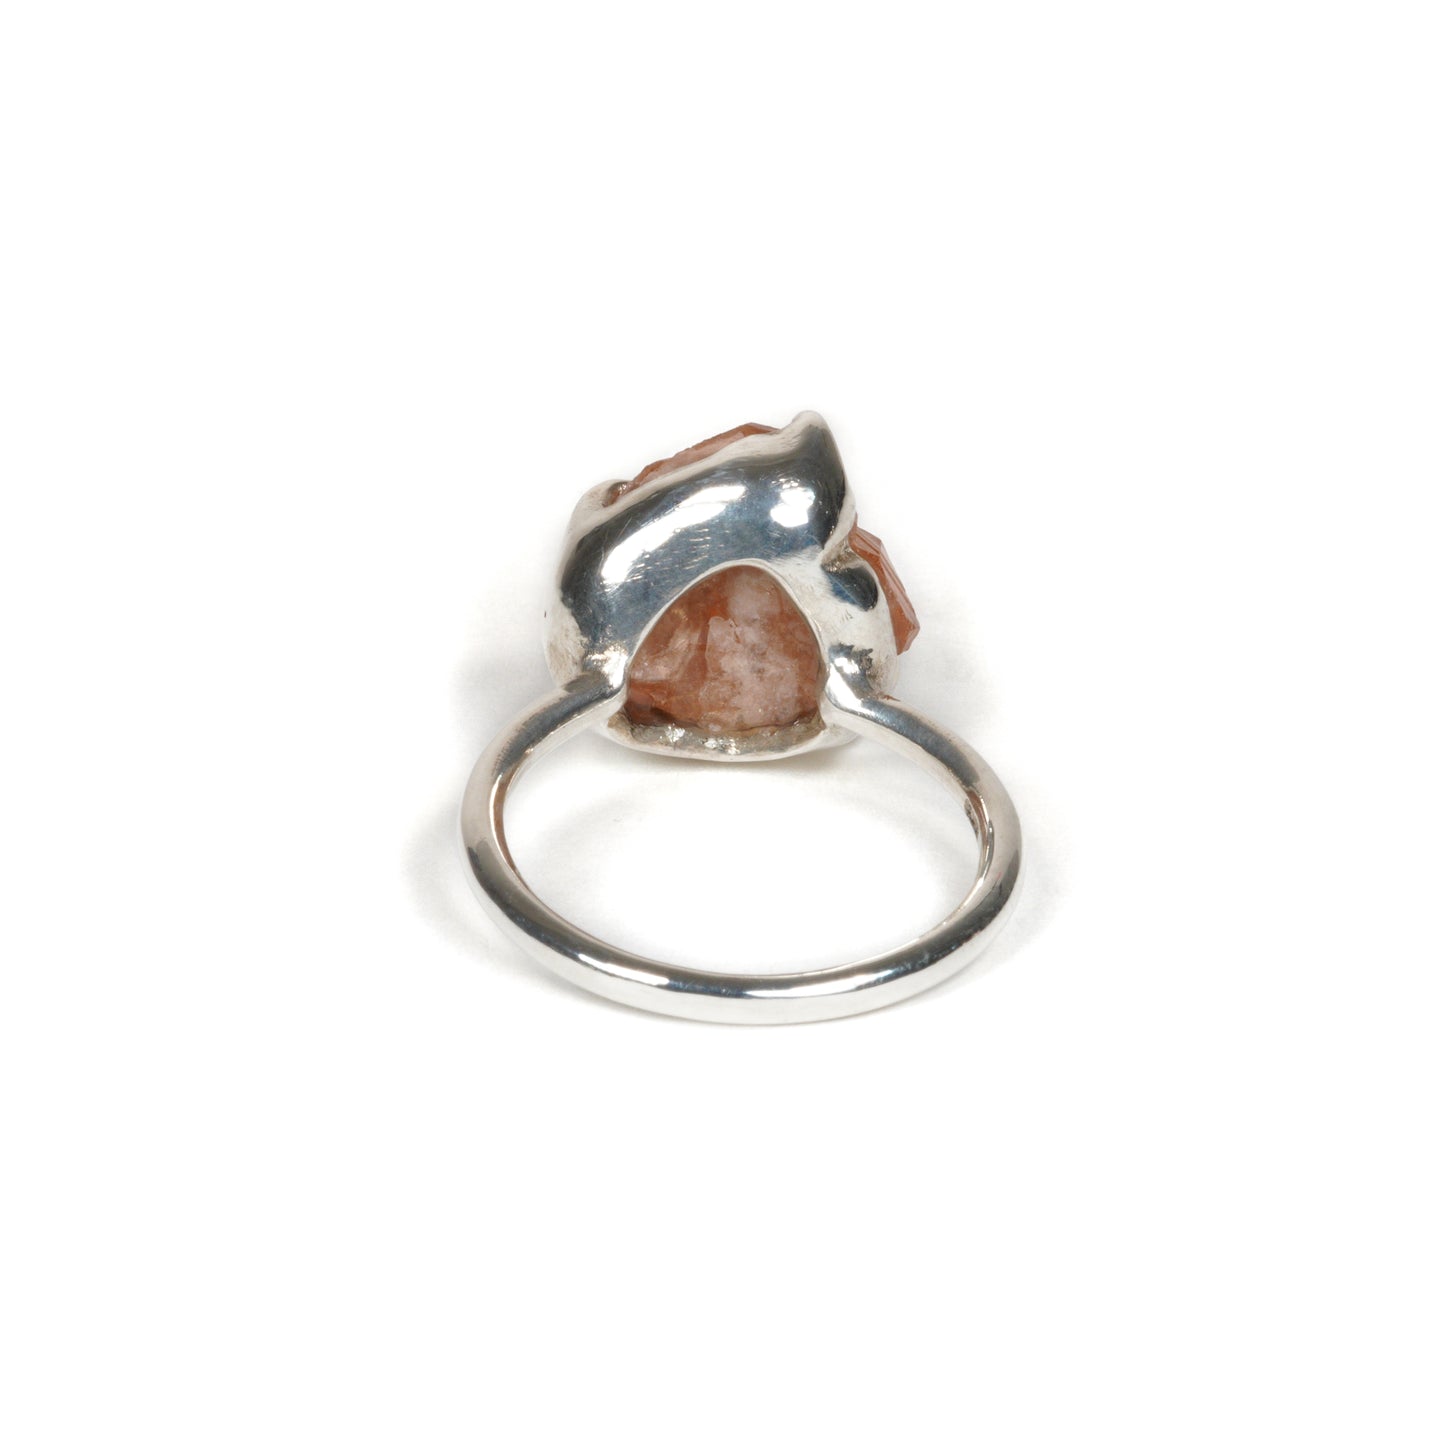 24 Ring / Hessonite Garnet